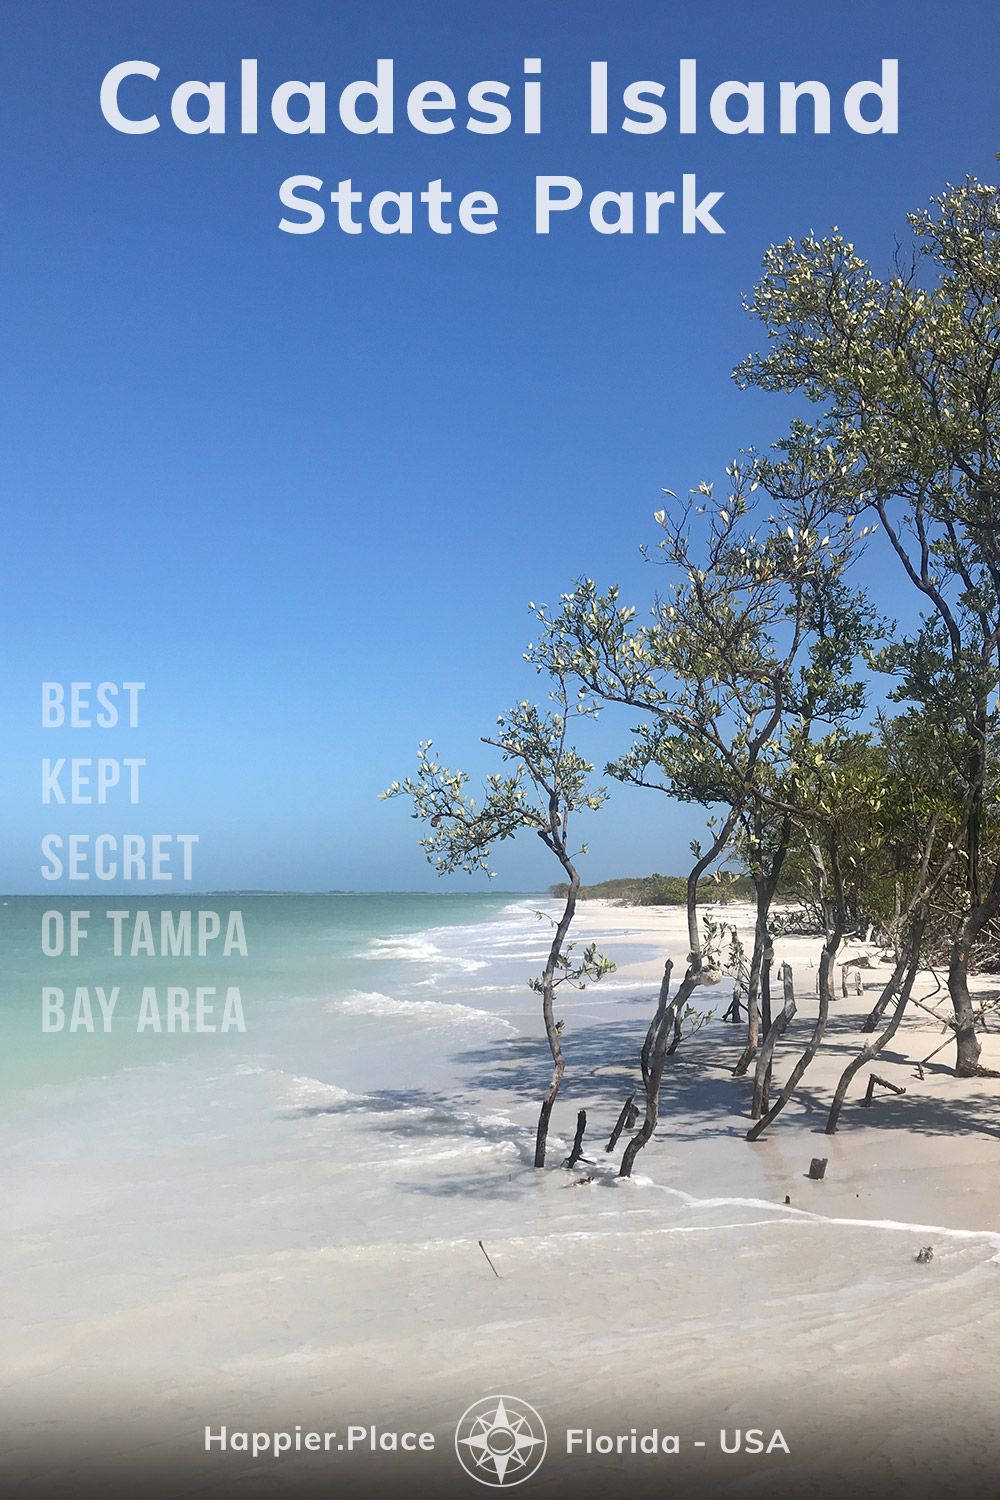 Caladesi Island State Park, Tampa Bay Area legjobban őrzött titka, érintetlen Öböl-parti sziget